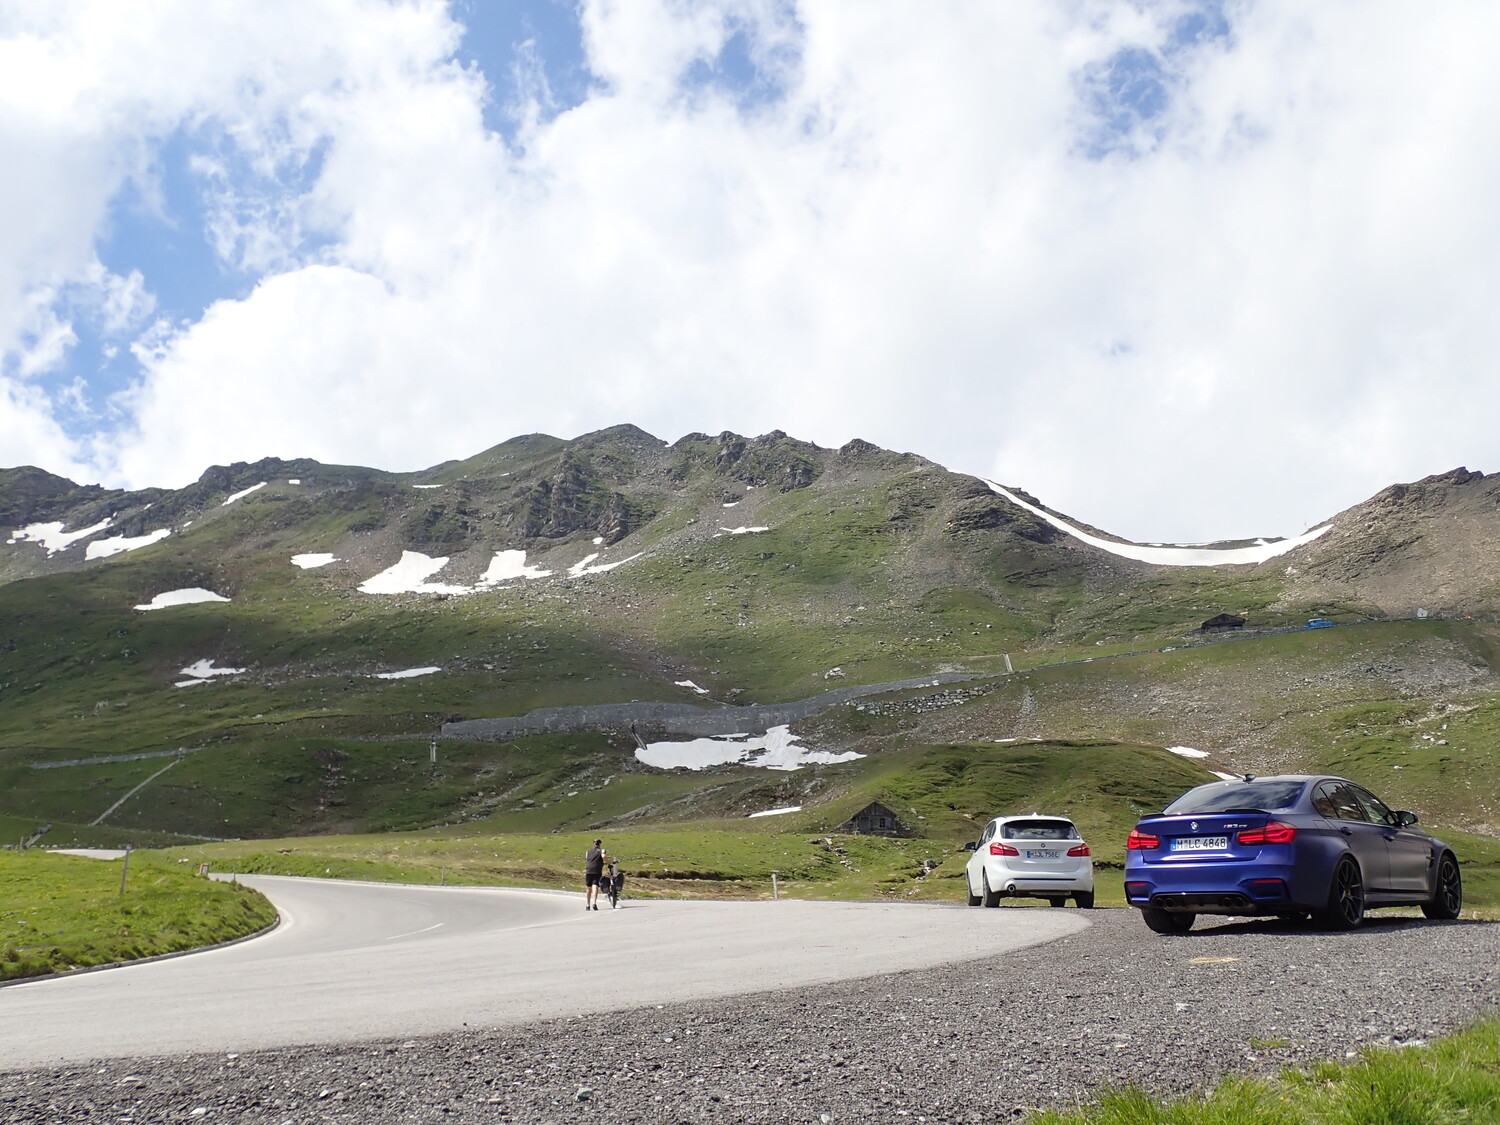 オーストリアの山岳道路とBMW